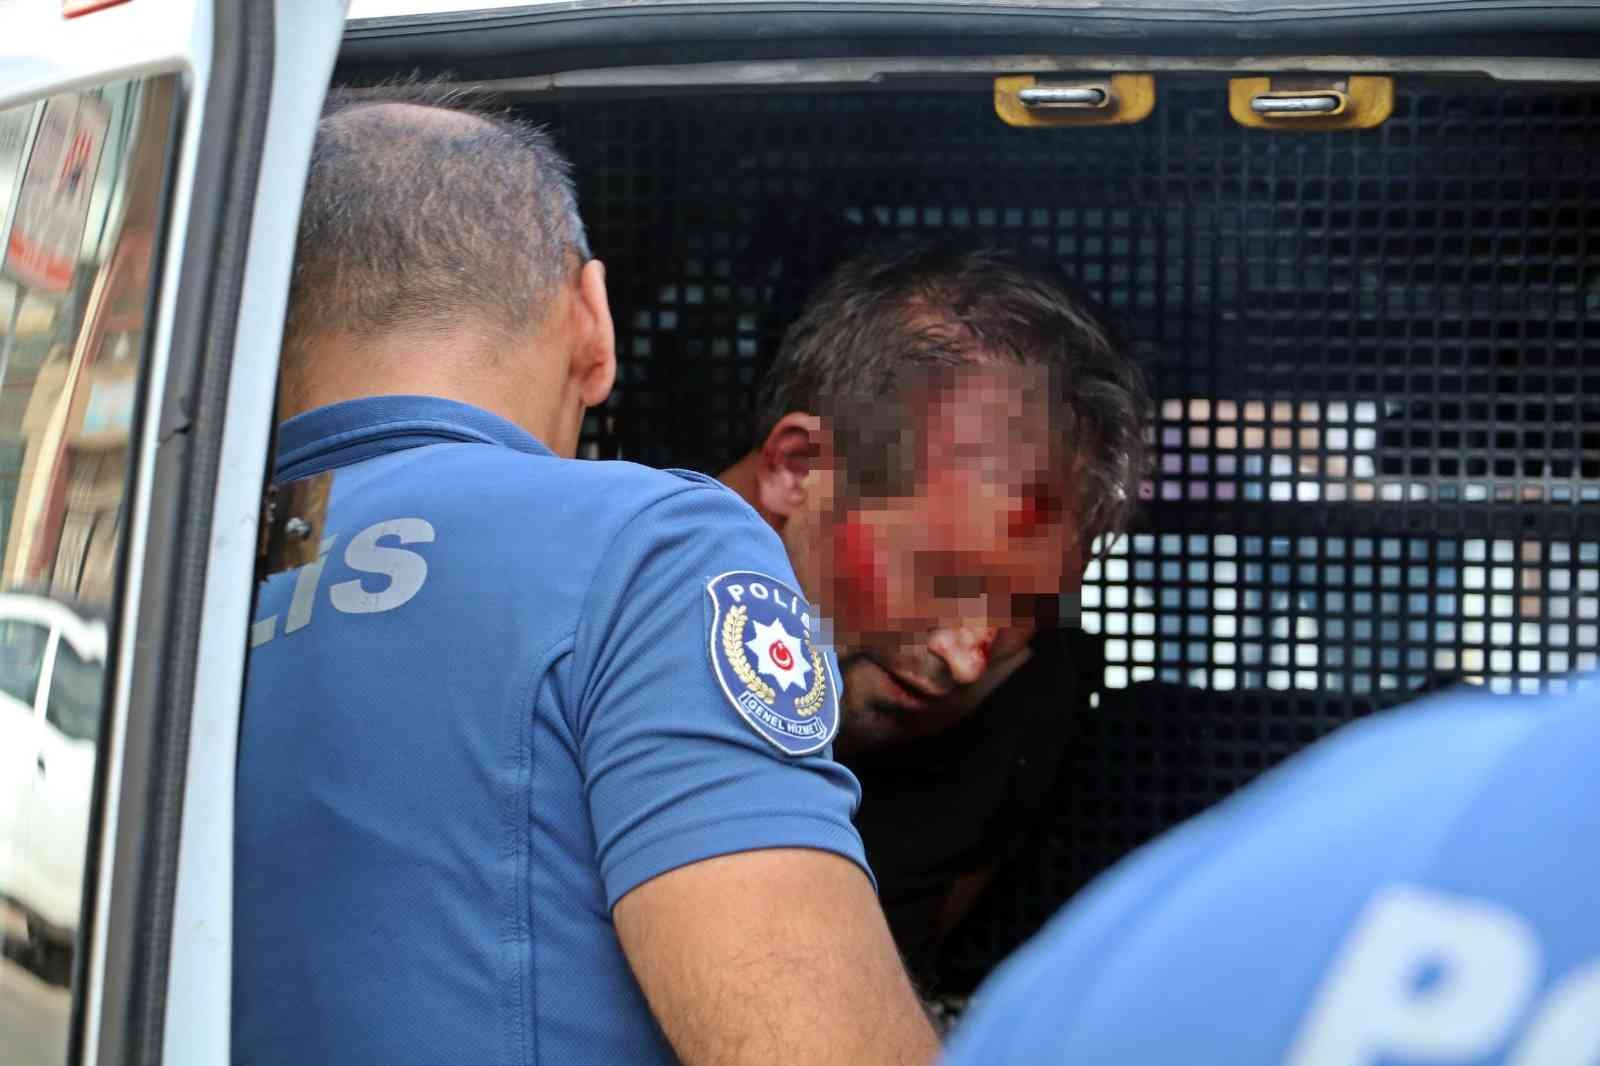 Kayınbiraderini bıçaklayan enişteye vatandaştan dayak #antalya